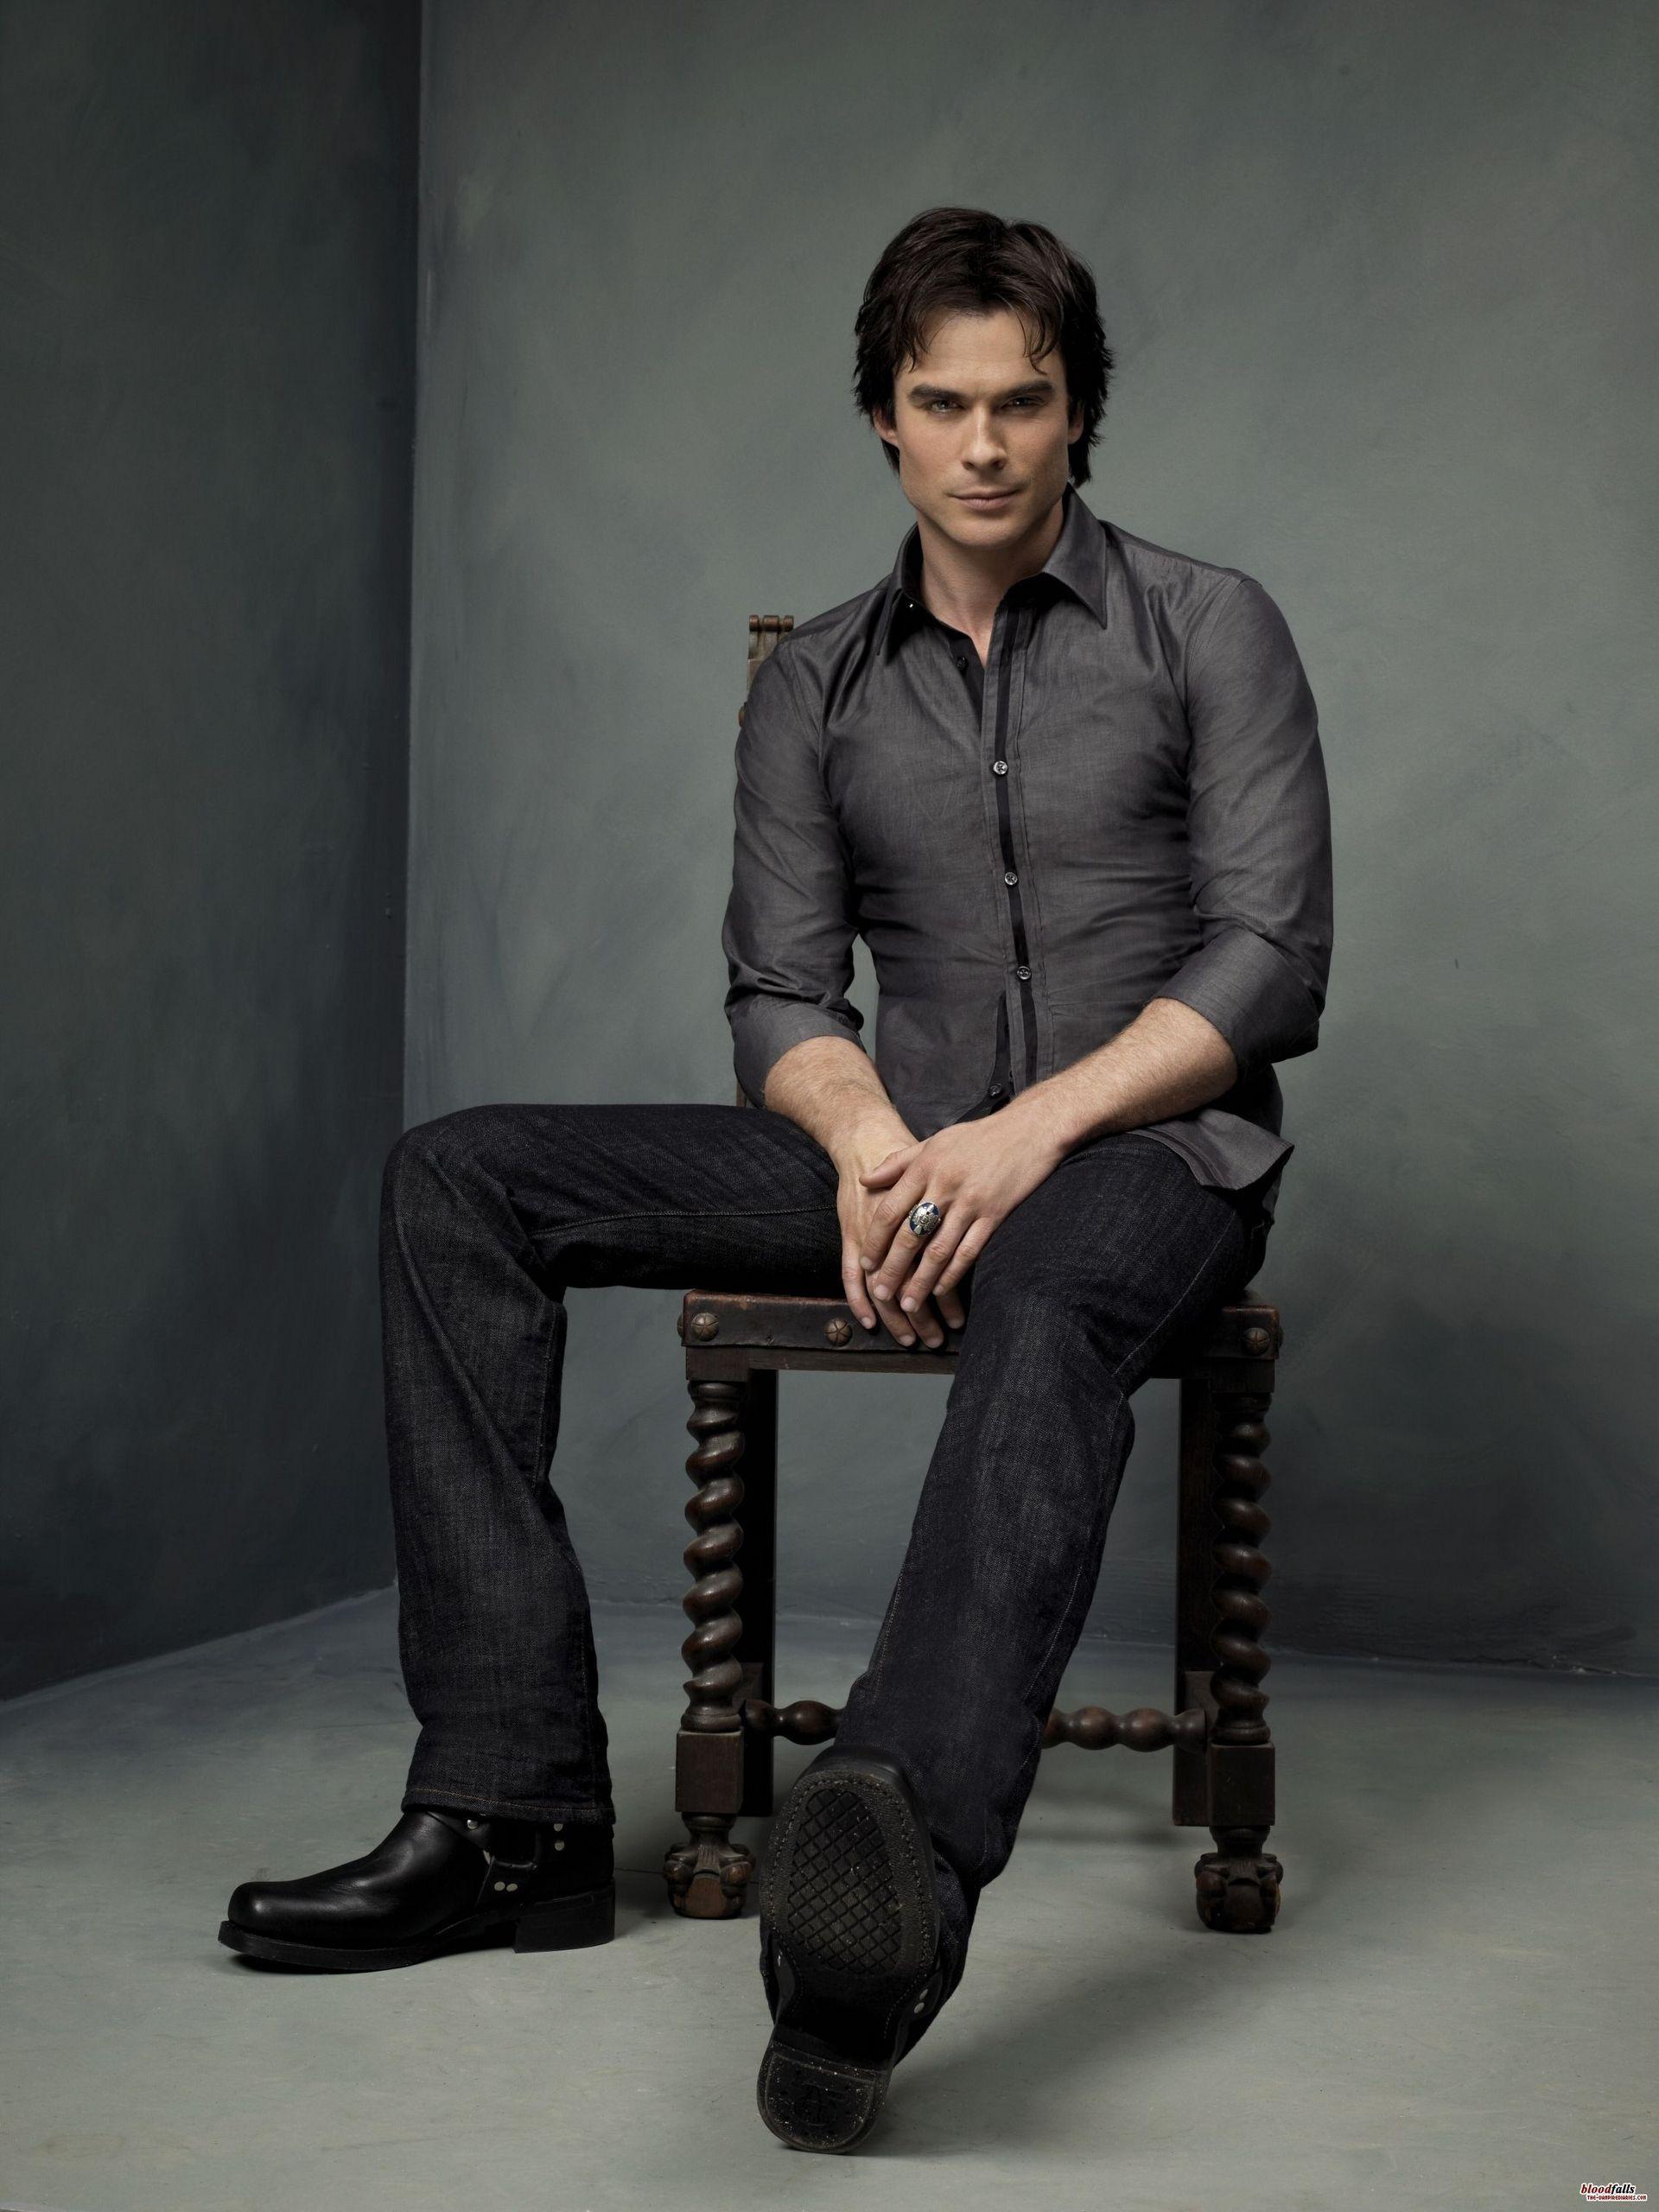 The Vampire Diaries TV Show image Damon Salvatore.